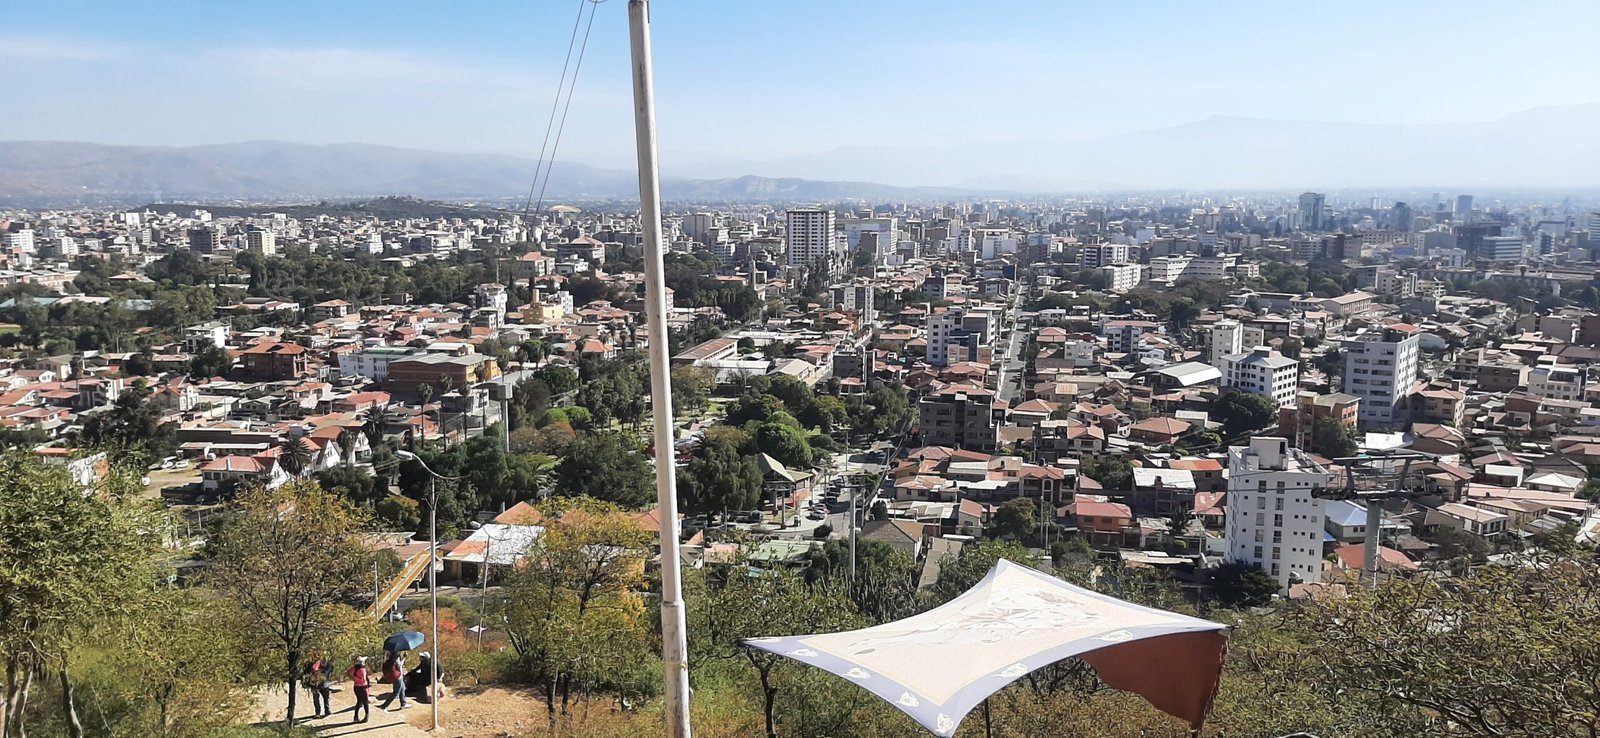 Un barrio de gente de clase alta, en Cochabamba, Bolivia